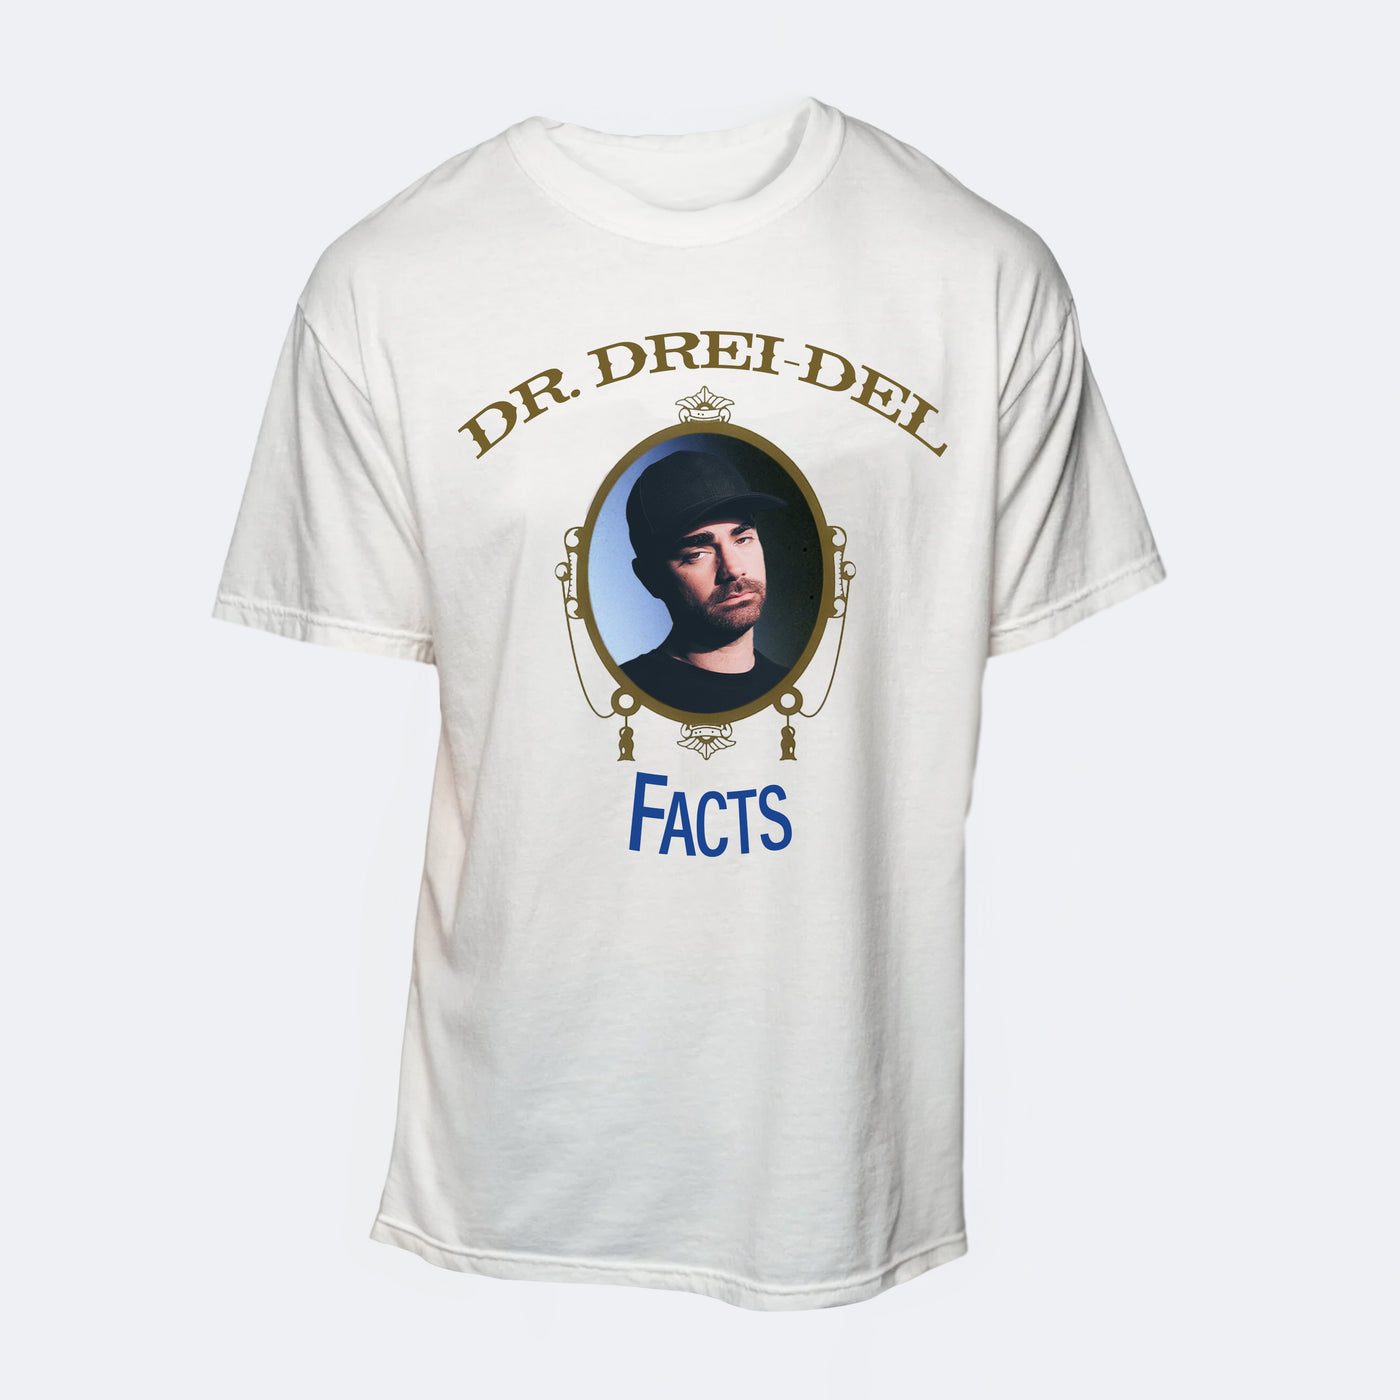 Dr. Drei-del Shirt